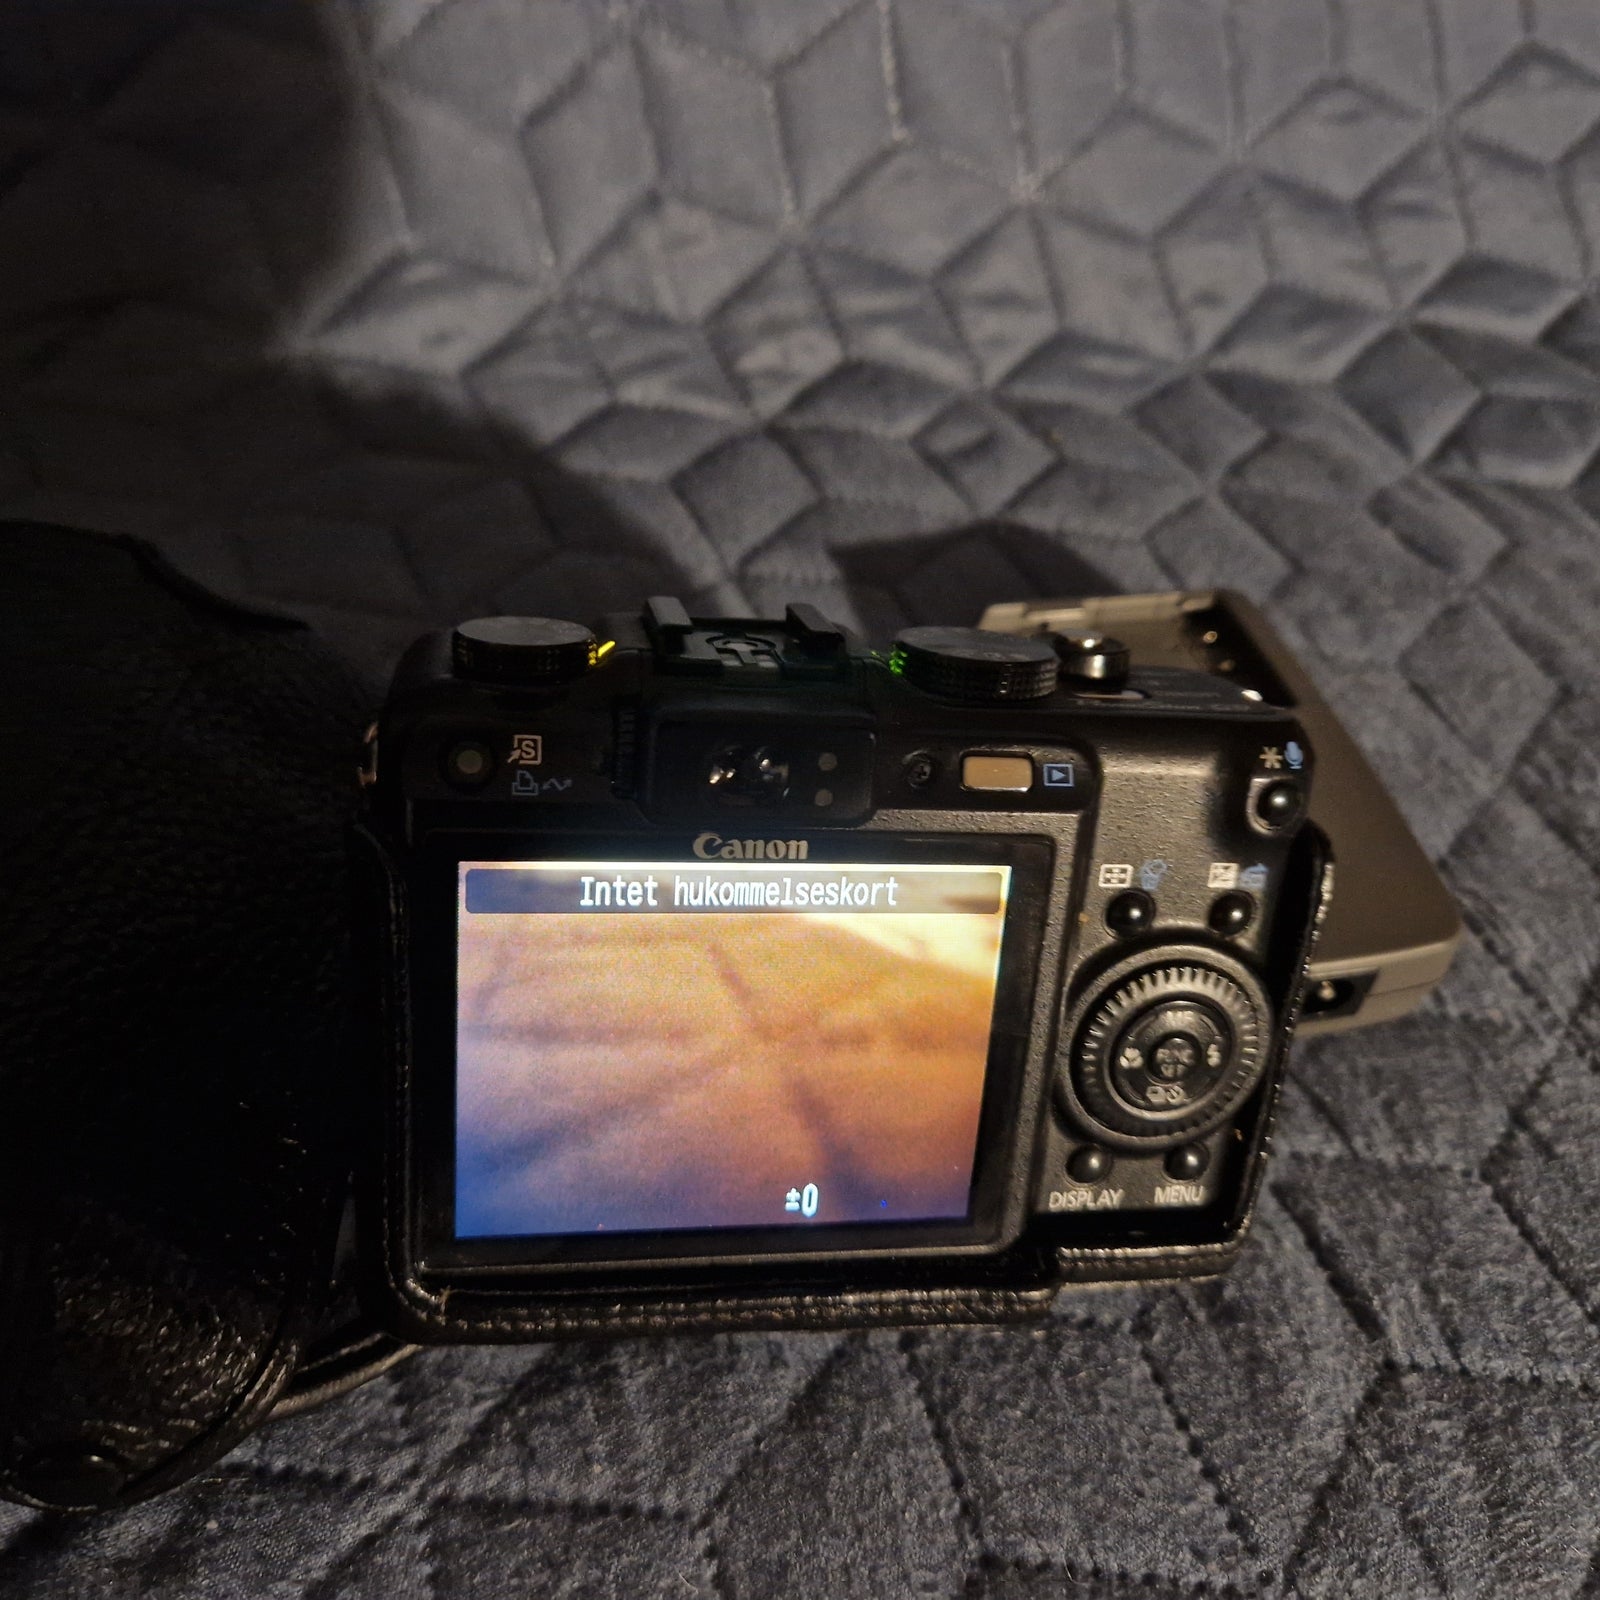 Canon, Powershot G9, 12,1 megapixels